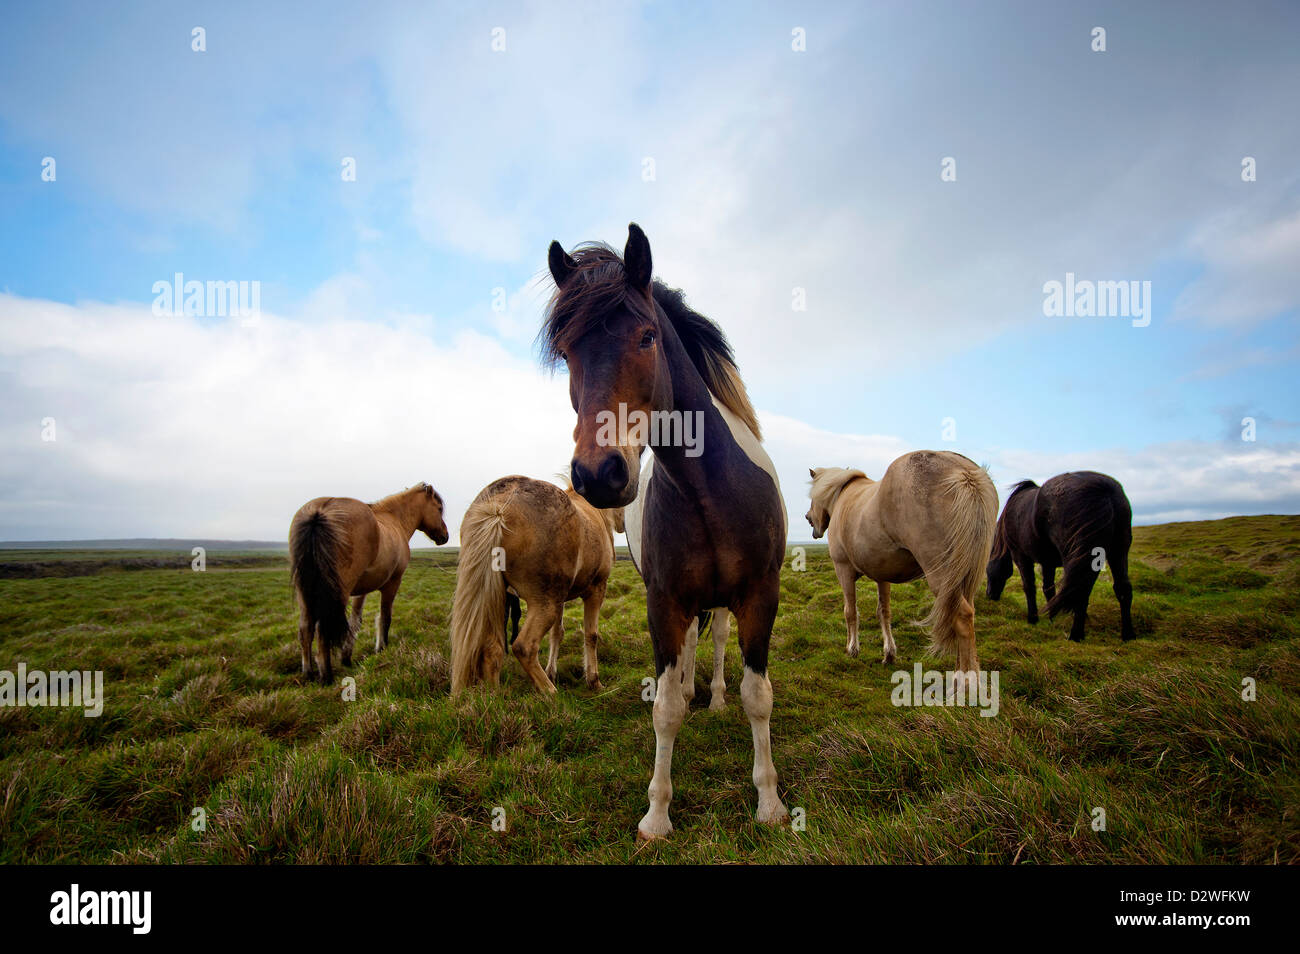 Horses, Iceland Stock Photo